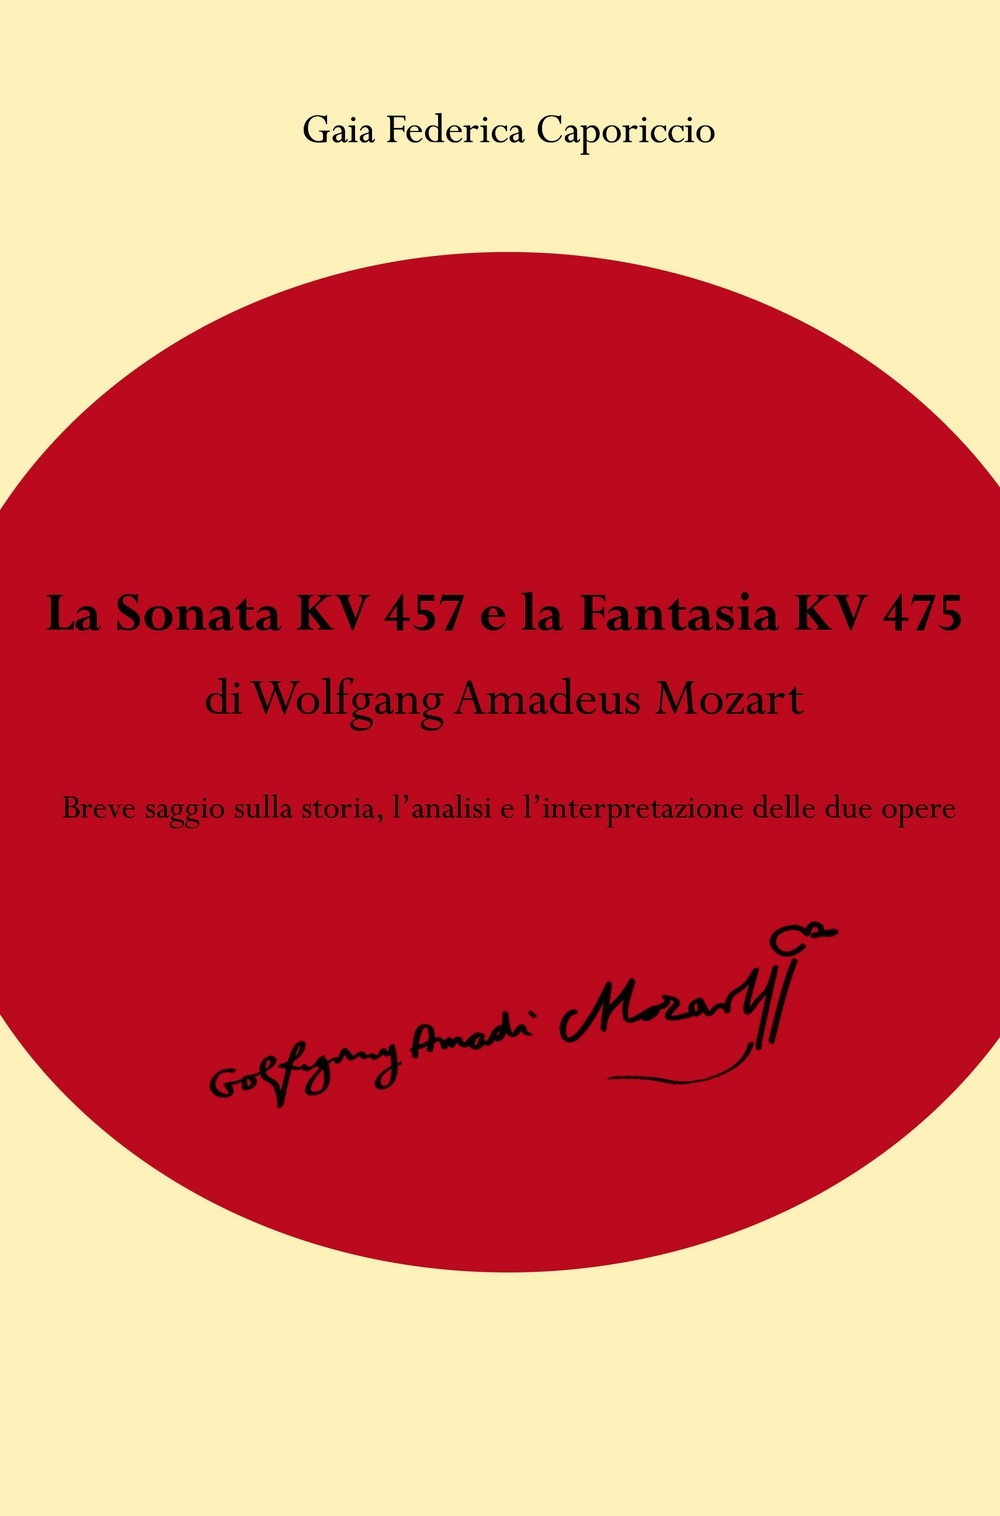 Image of La Fantasia KV475 e la Sonata KV457 di Wolfgang Amadeus Mozart